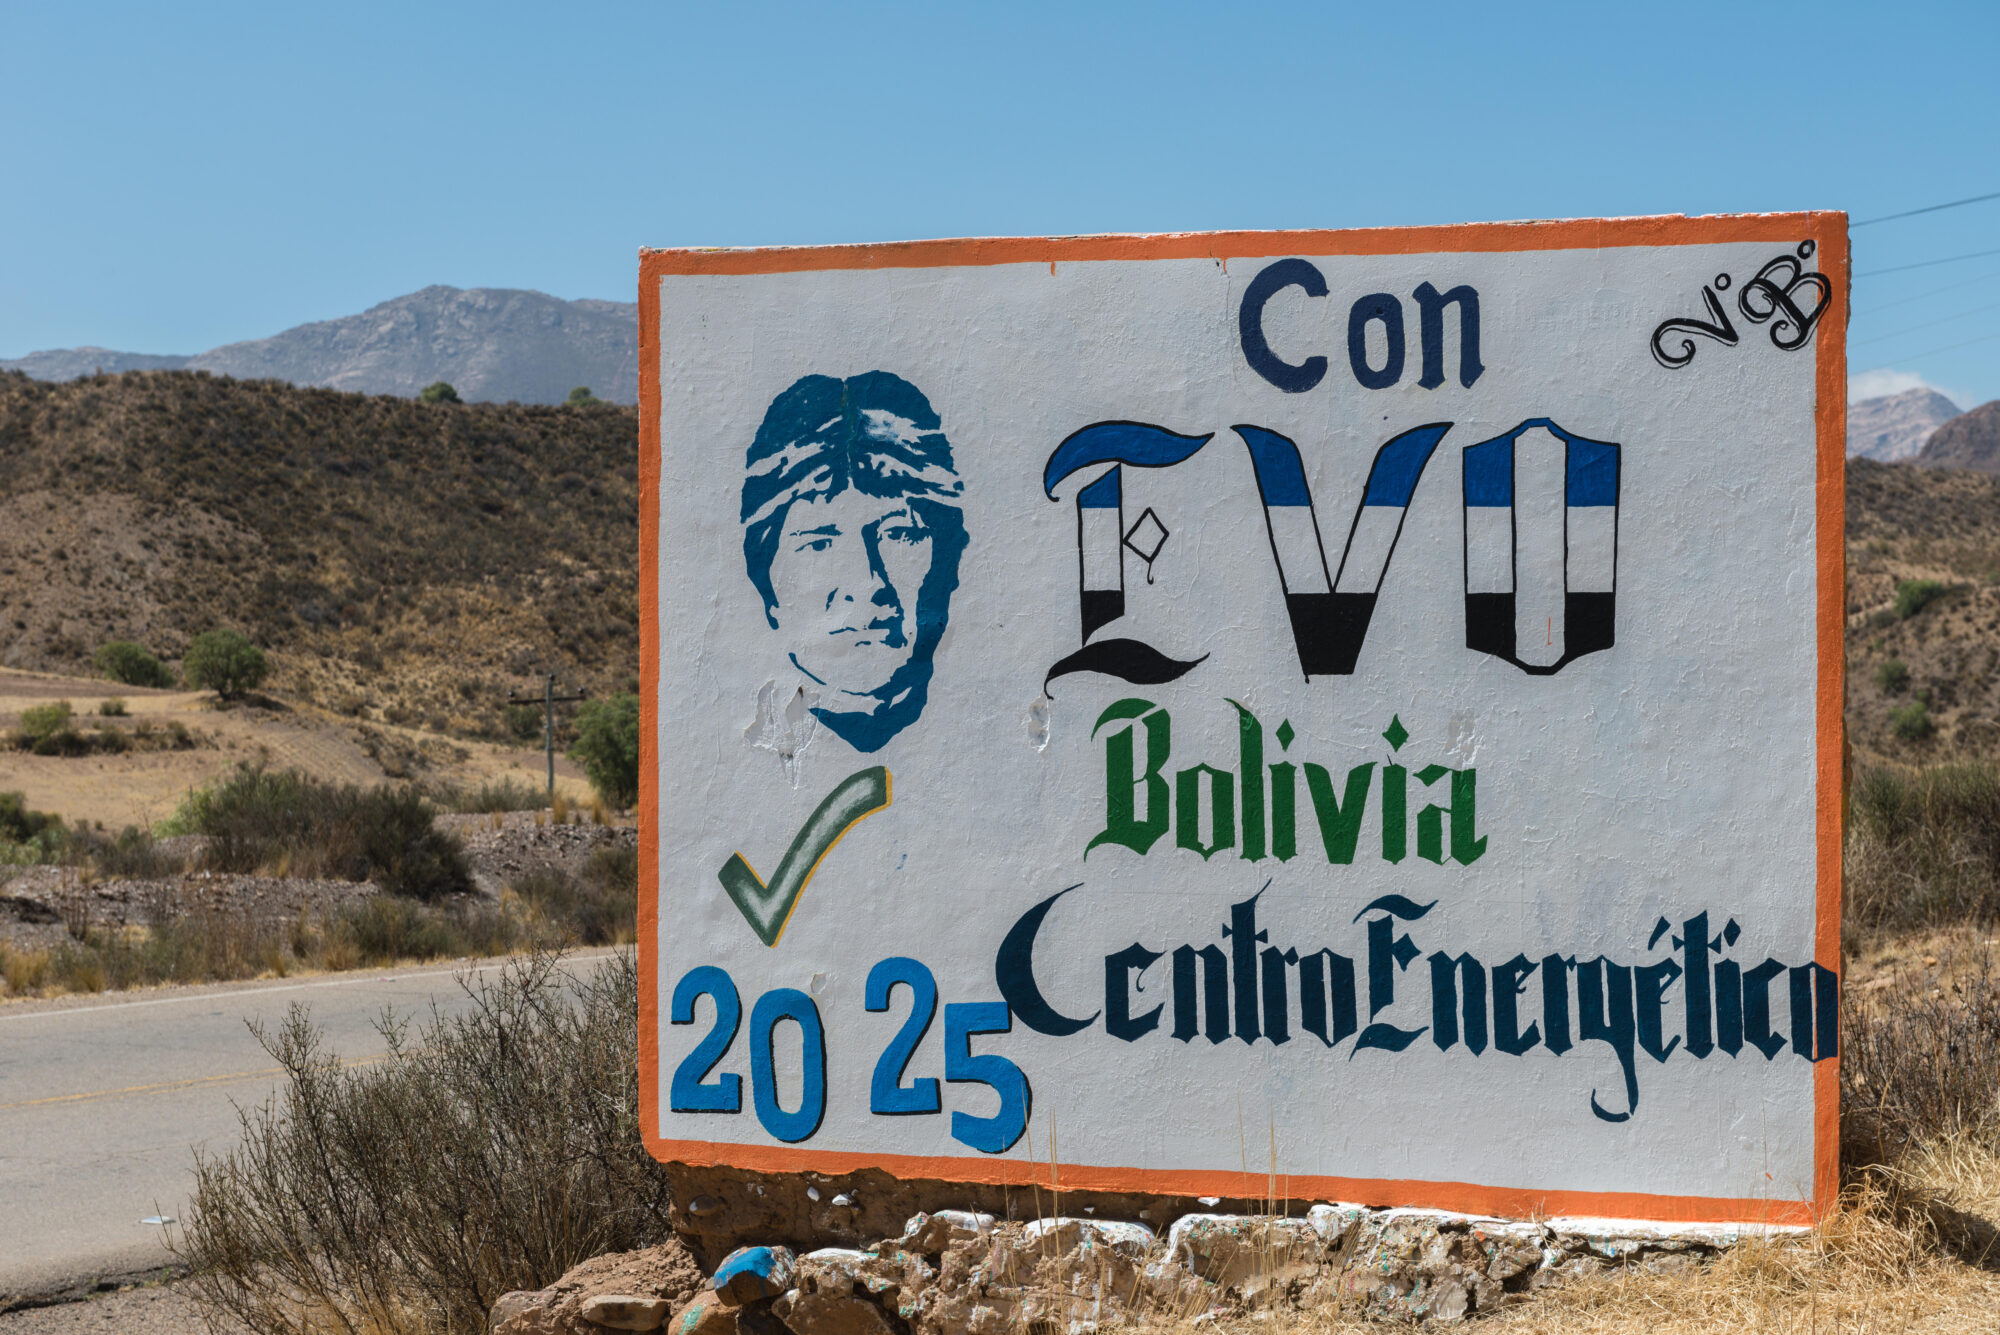 Cartaz mostrando o ex-presidente boliviano Evo Morales promovendo um plano de transição energética.